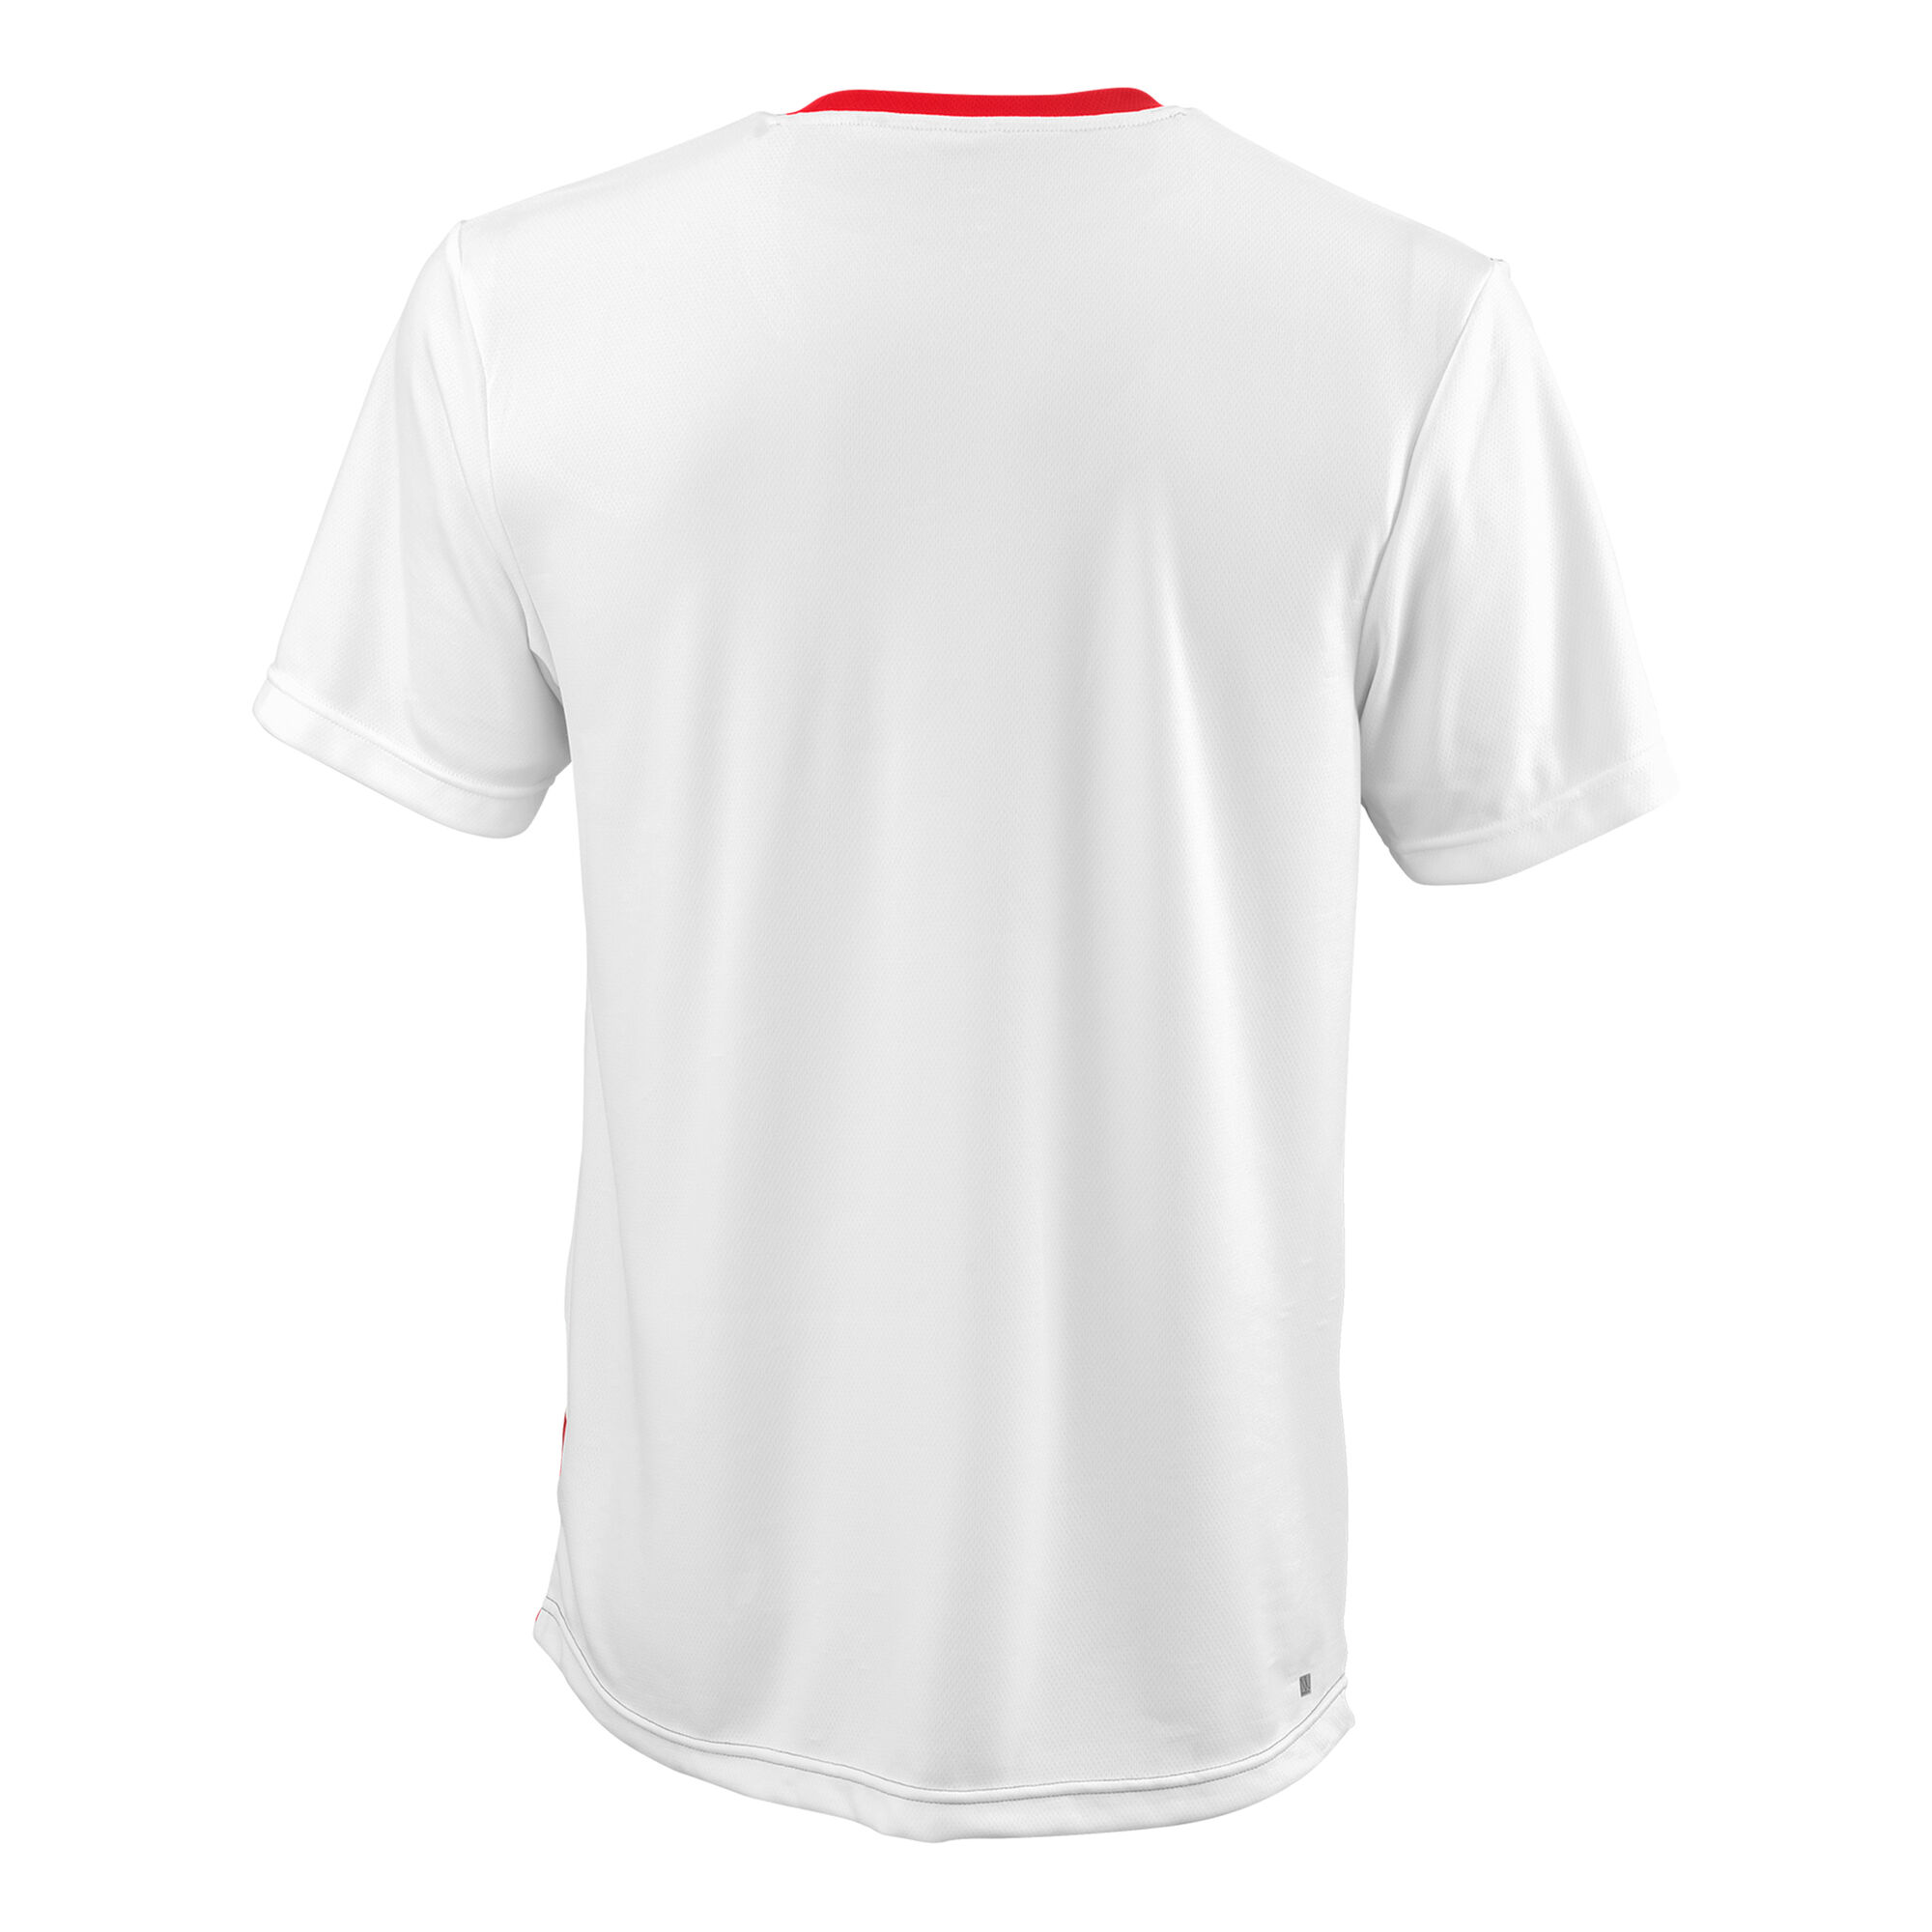 Wilson T-Shirt Herren Rot, Weiß online kaufen | Tennis Point DE